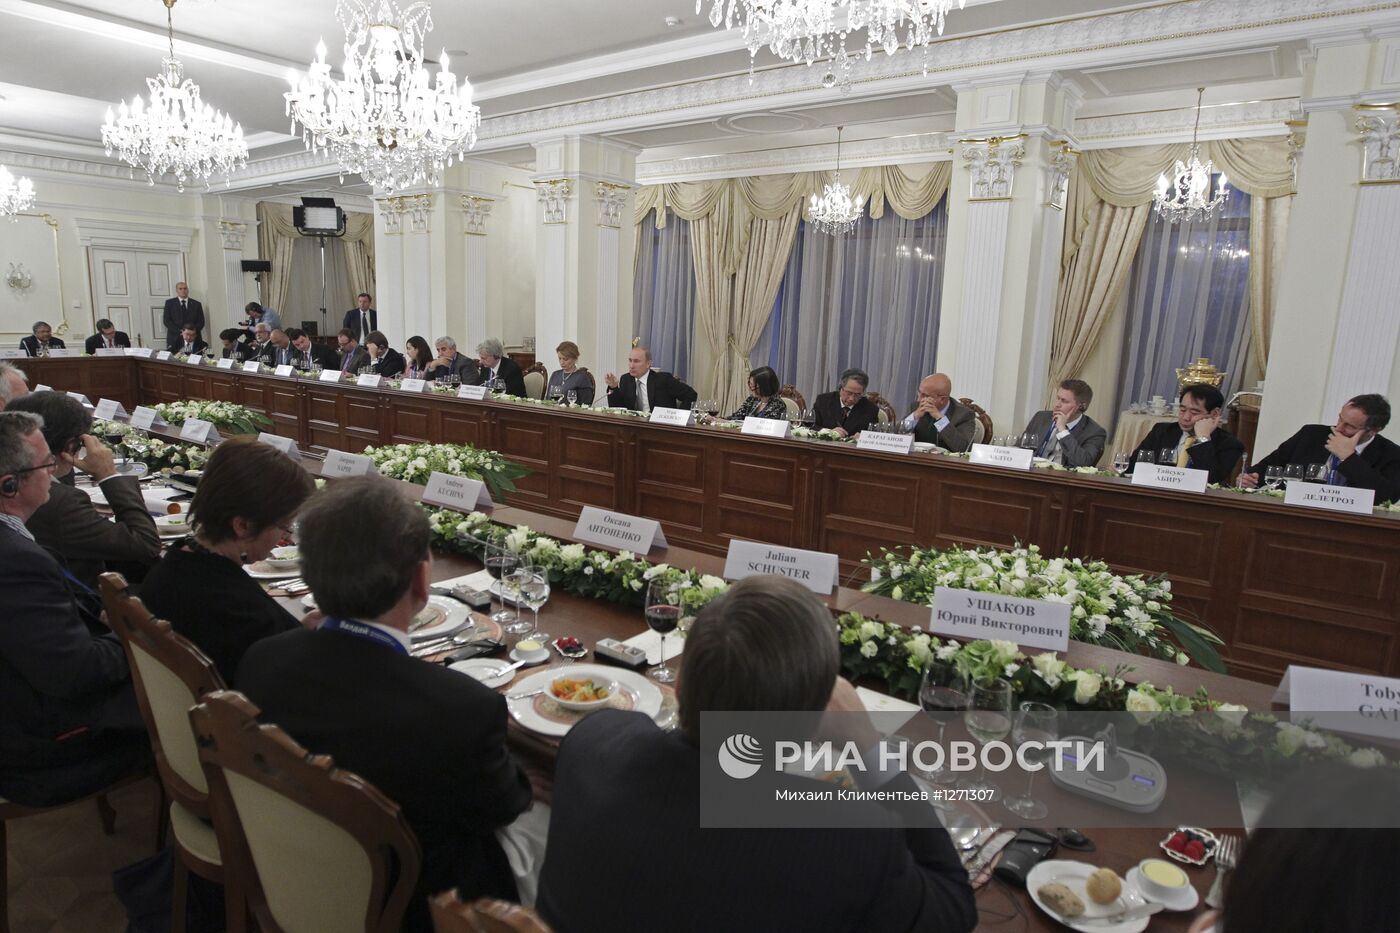 В.Путин встретился с дискуссионным клубом "Валдай"